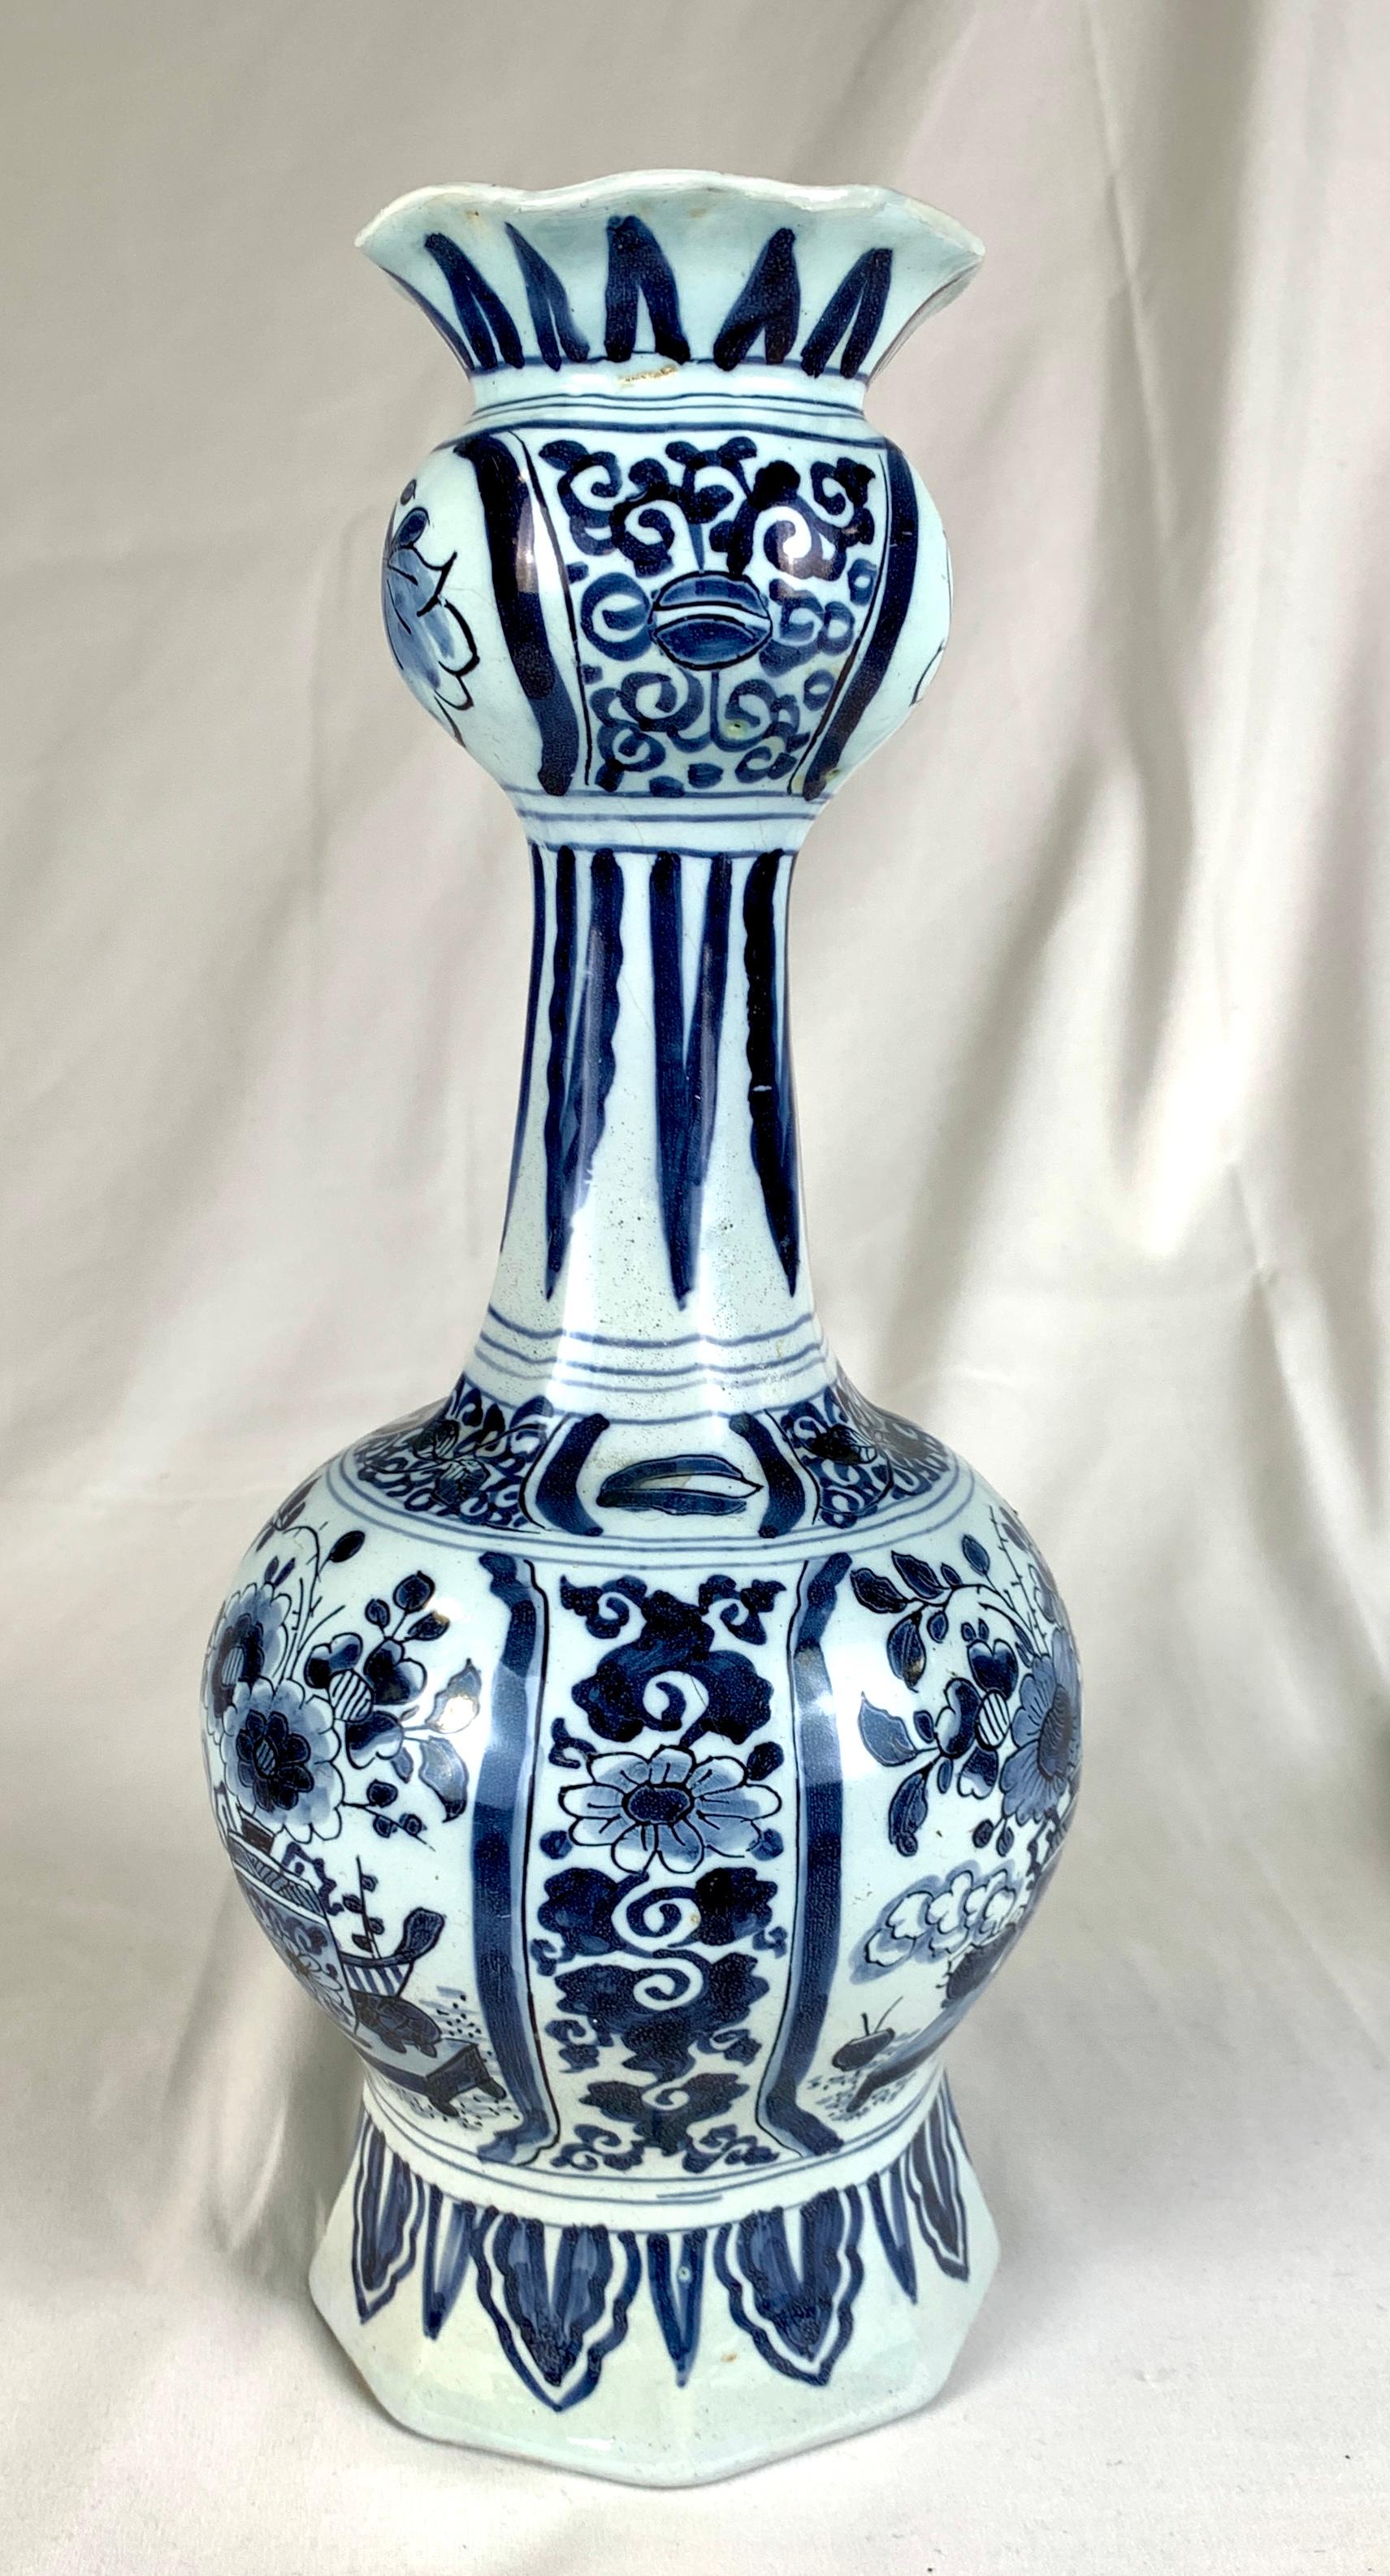 Cette jarre bleue et blanche de Delft a été fabriquée aux Pays-Bas au début du 18e siècle, vers 1730.
 La jarre est recouverte d'une magnifique glaçure bleu clair, traditionnelle de la plupart des Delft hollandais du début du 18e siècle.
 Le style